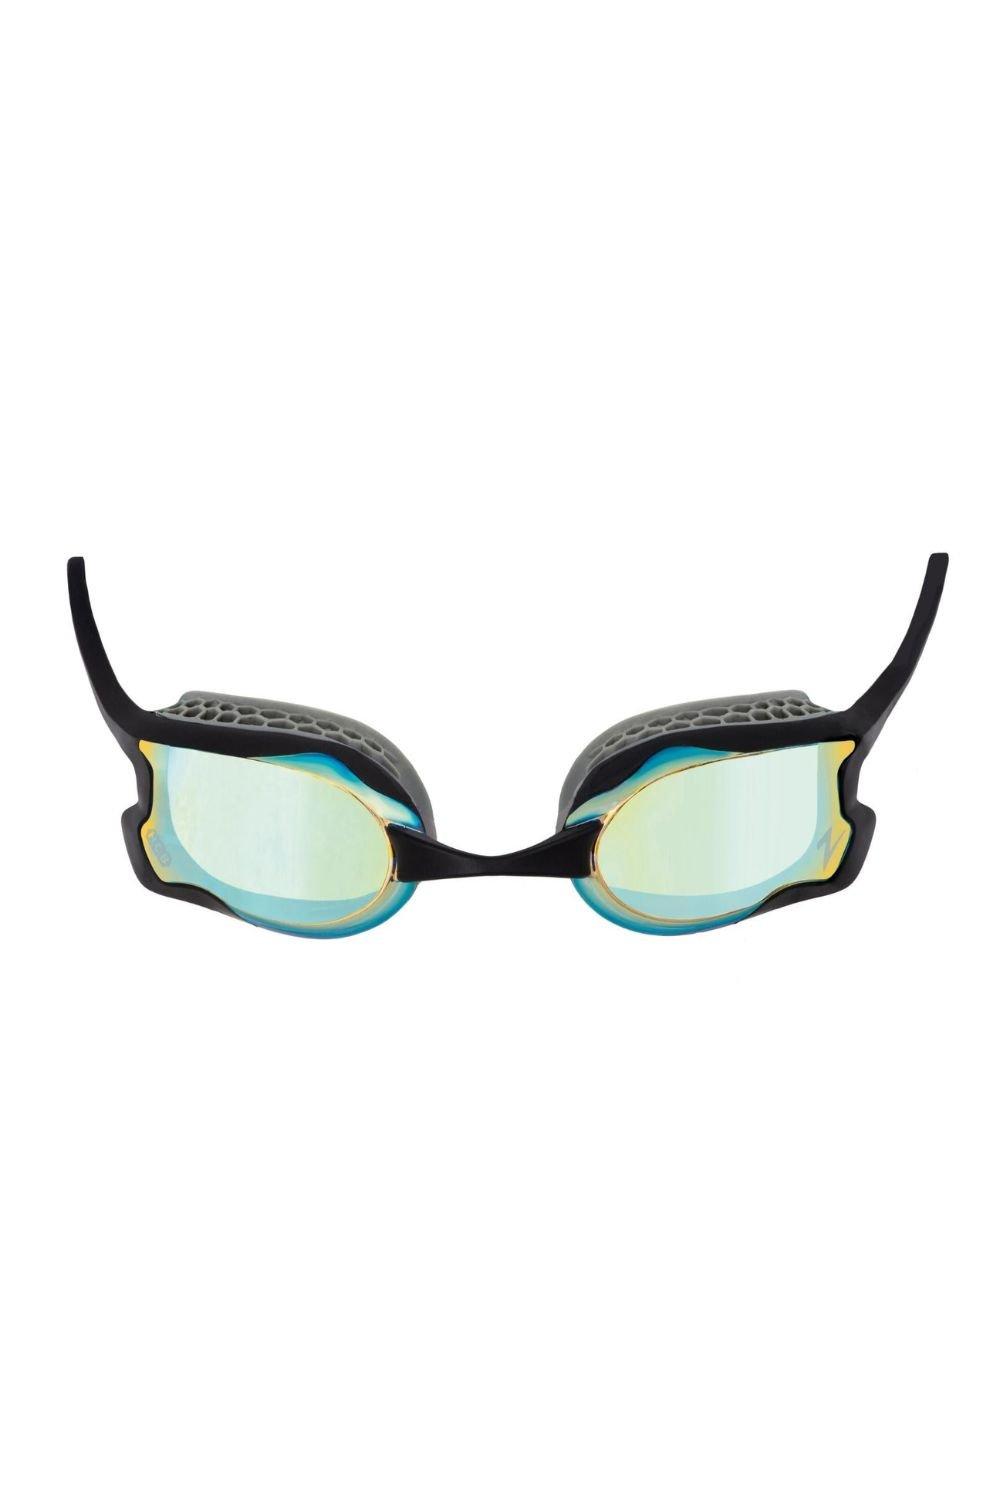 Очки для плавания с зеркалом Raptor HCB Zoggs, серый sailfish swim goggle storm grey очки для плавания